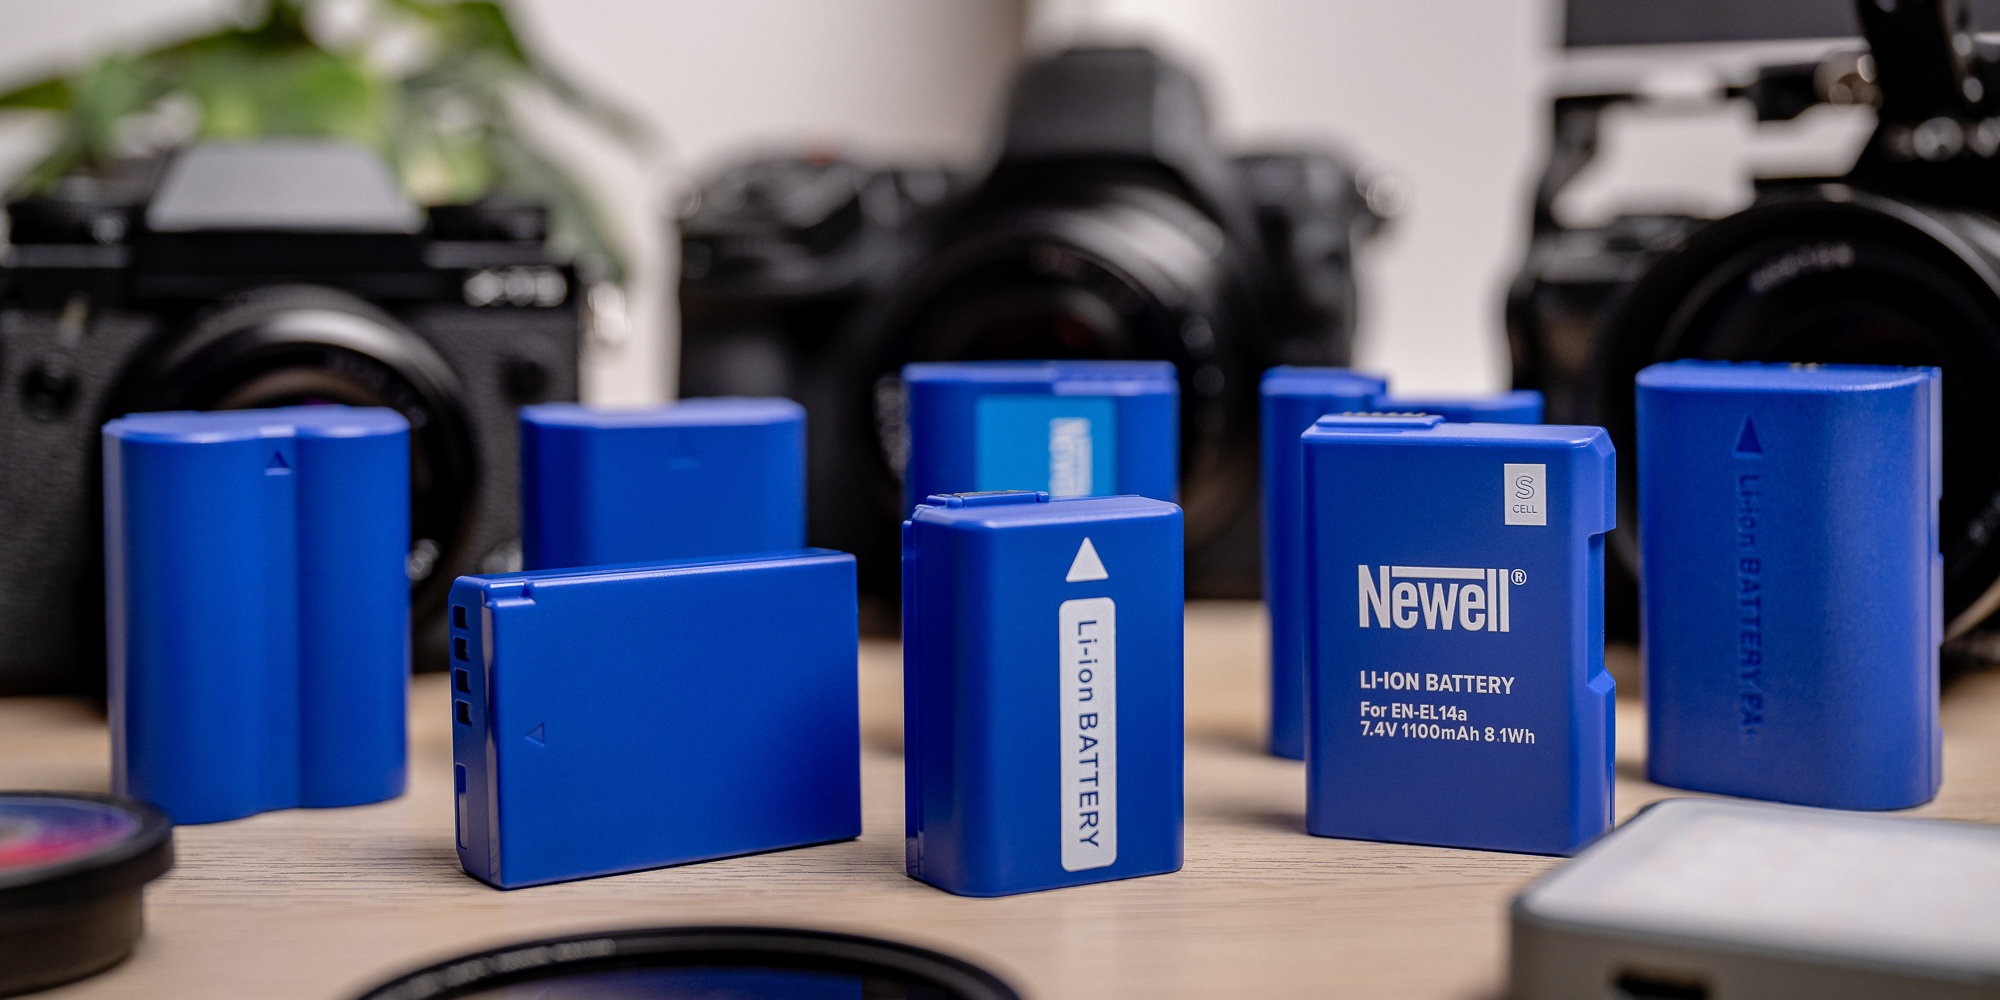 Akumulator zastępczy Newell SupraCell Protect NP-F970 do Sony